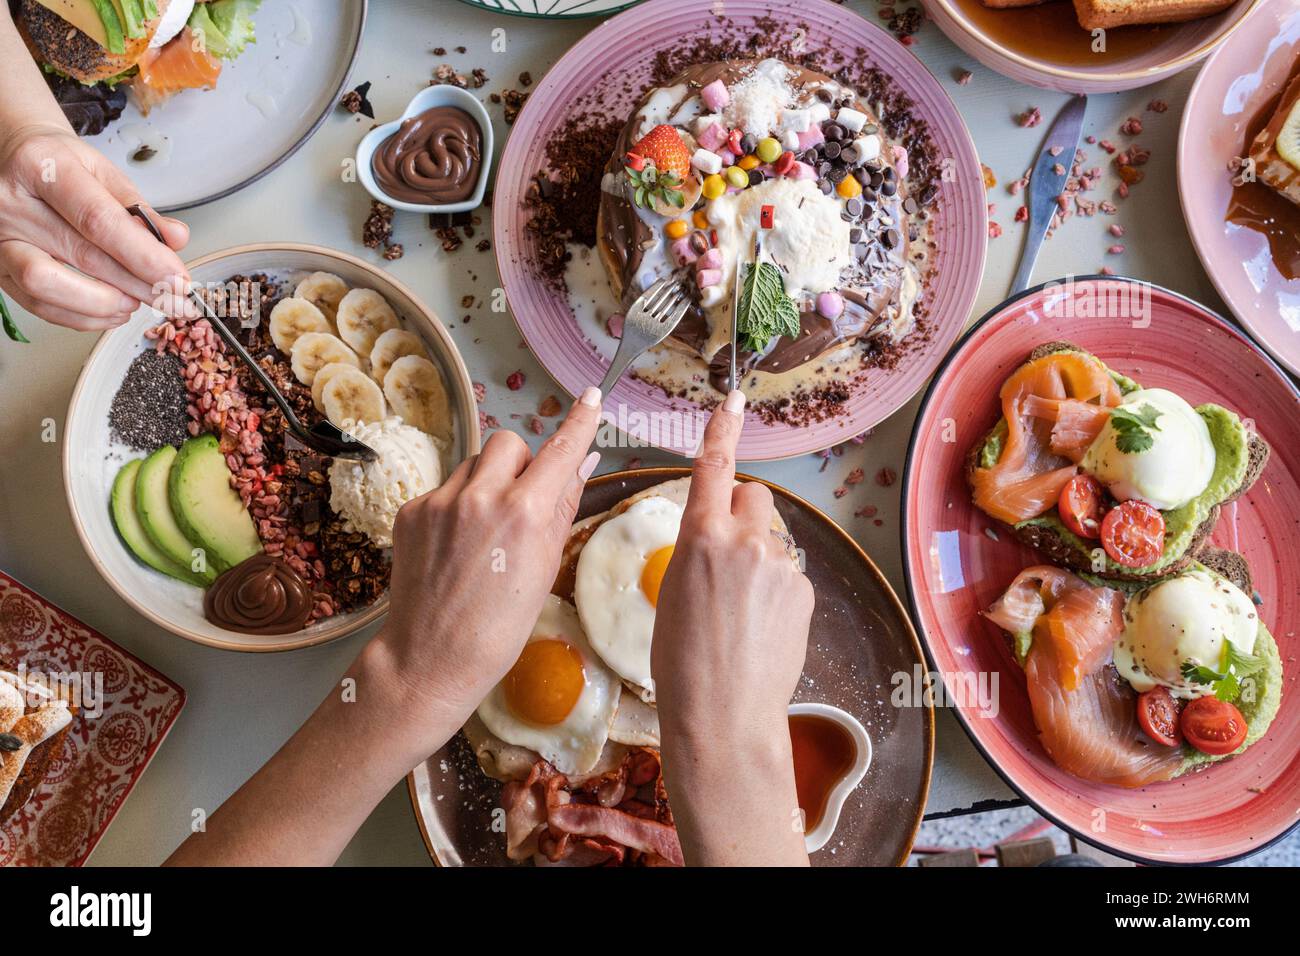 Le petit-déjeuner est servi avec divers plats, y compris des œufs, du bacon, des crêpes et des fruits sur une table colorée. Banque D'Images